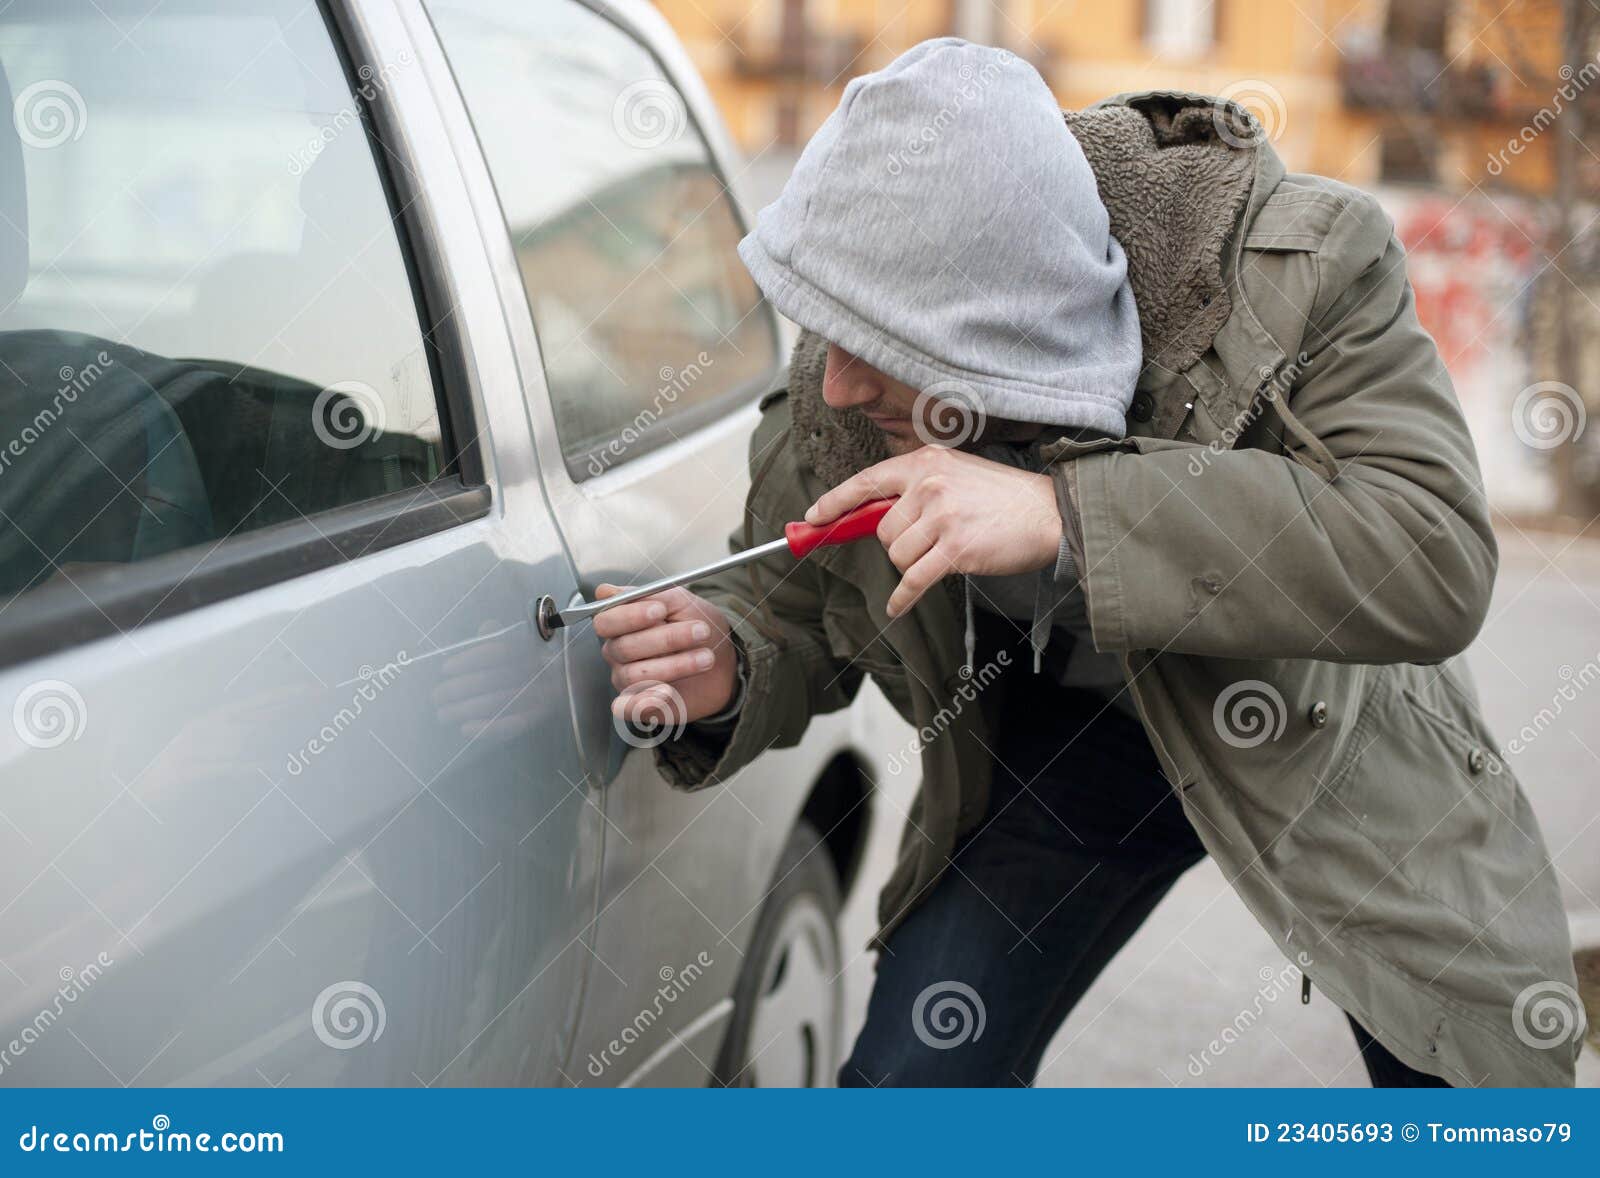 car thief